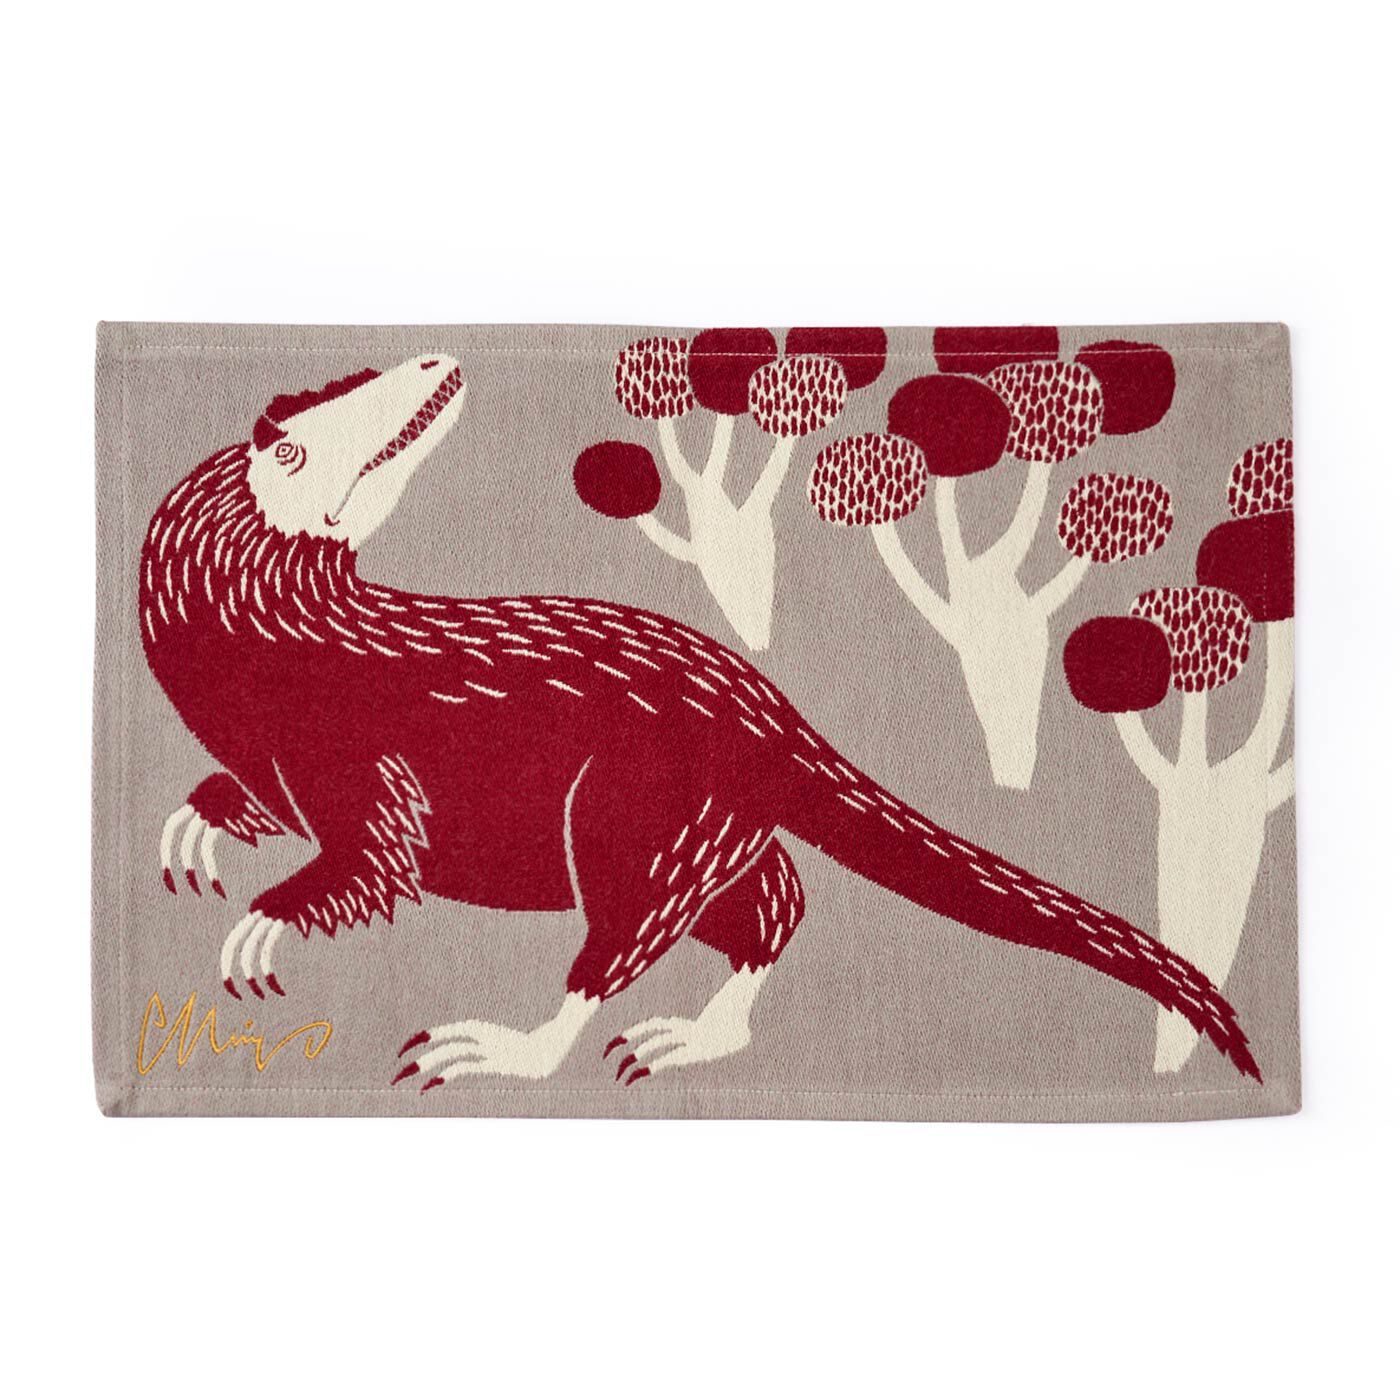 フェリシモの雑貨 Kraso|moritaMiW 織り柄が美しいちょっと小さめランチョンマットの会|〈あの地を歩く羽毛恐竜〉